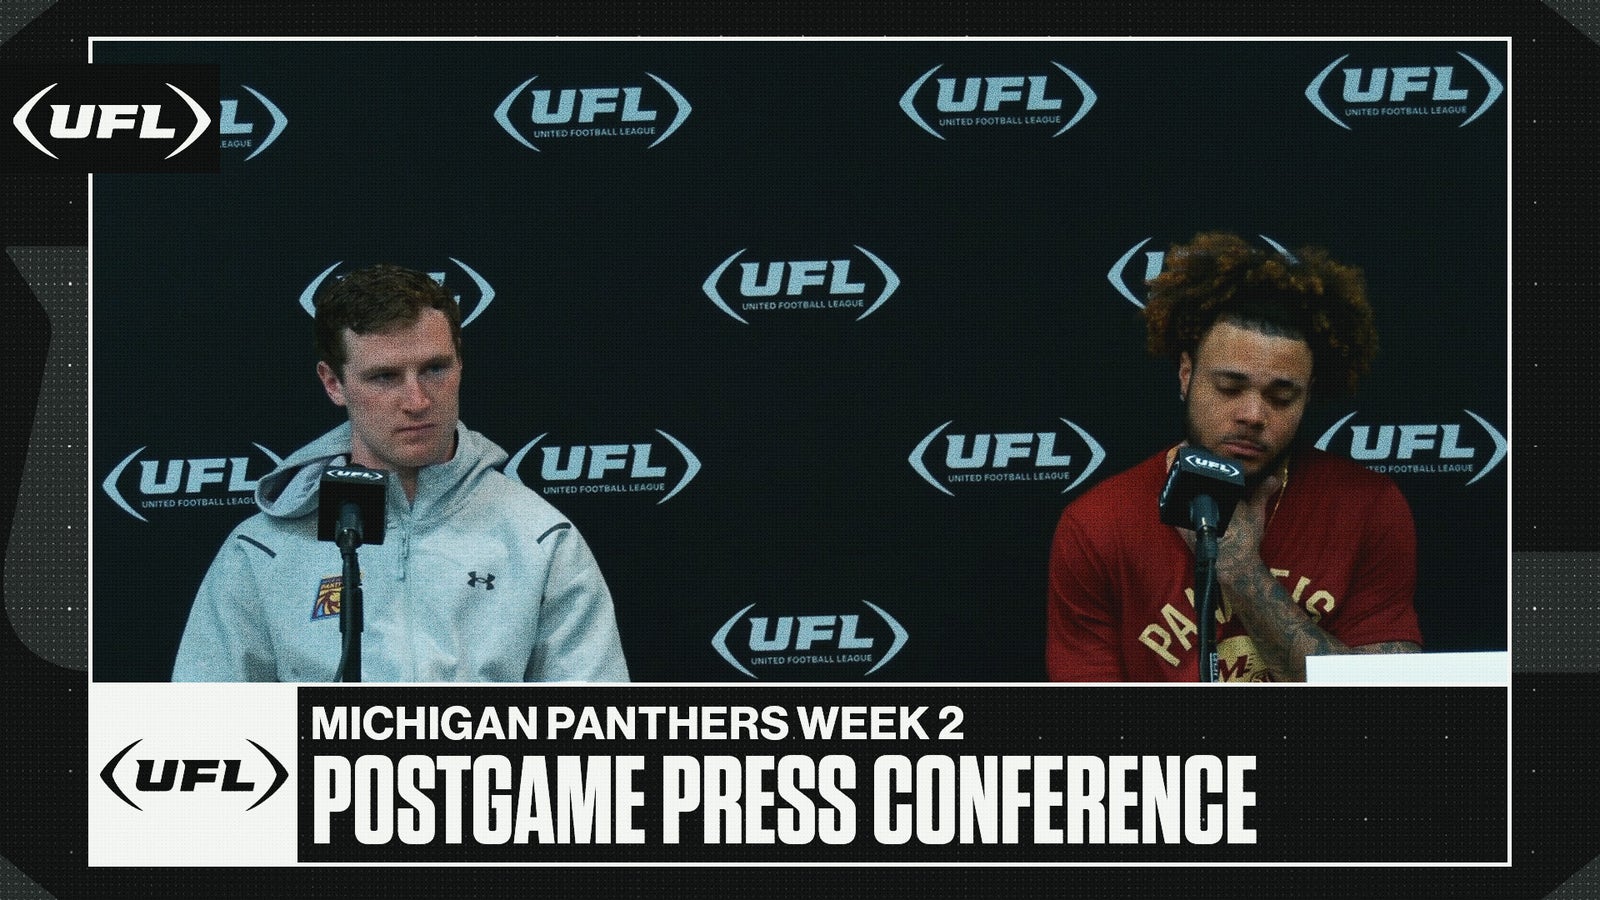 Michigan Panthers Week 2 postgame press conference